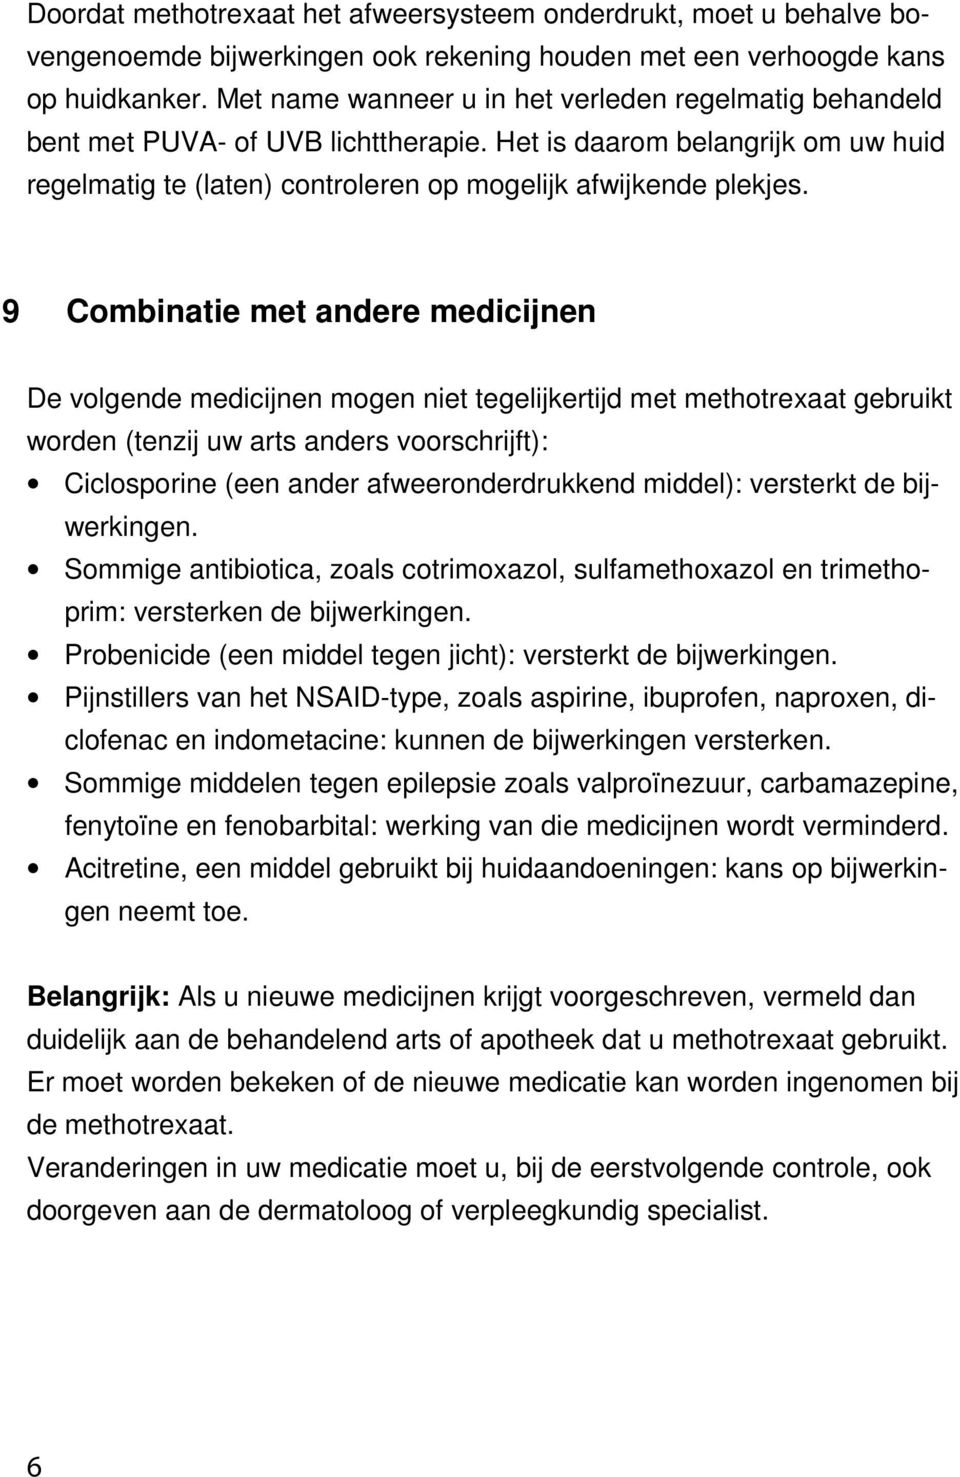 9 Combinatie met andere medicijnen De volgende medicijnen mogen niet tegelijkertijd met methotrexaat gebruikt worden (tenzij uw arts anders voorschrijft): Ciclosporine (een ander afweeronderdrukkend